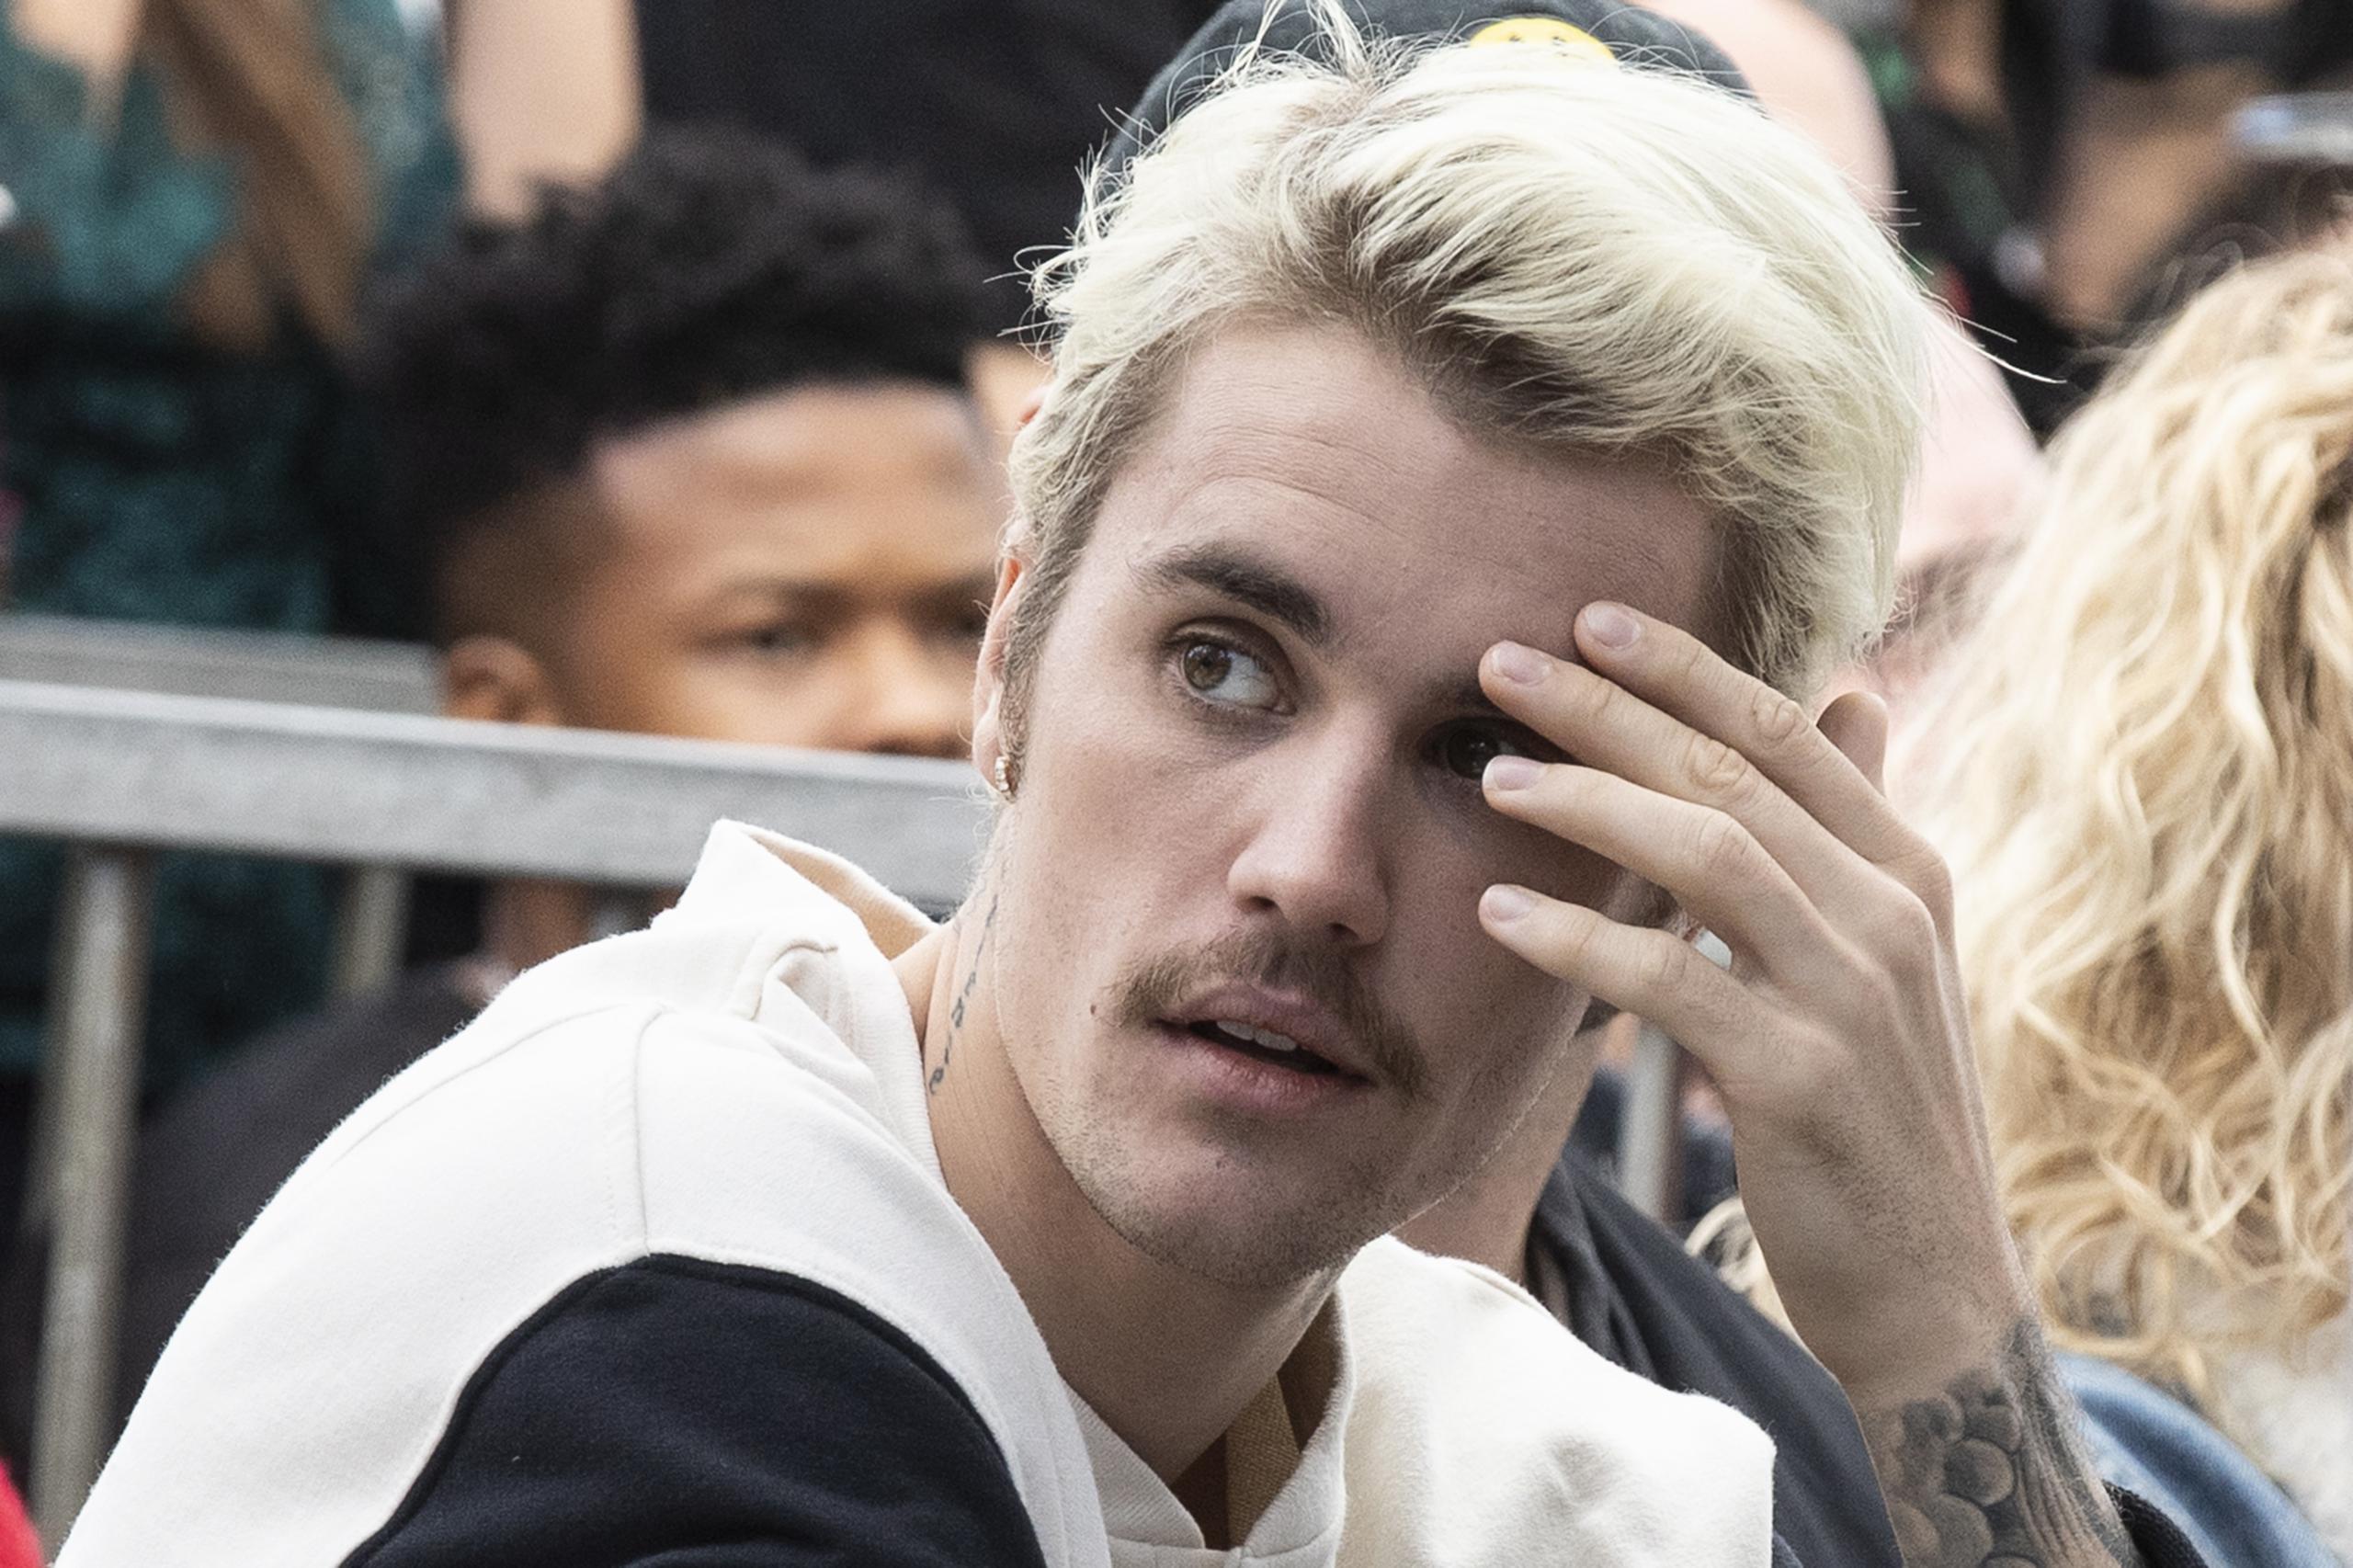 La última visita de Bieber a Argentina, sucedida en 2013, estuvo plagada de polémicas.